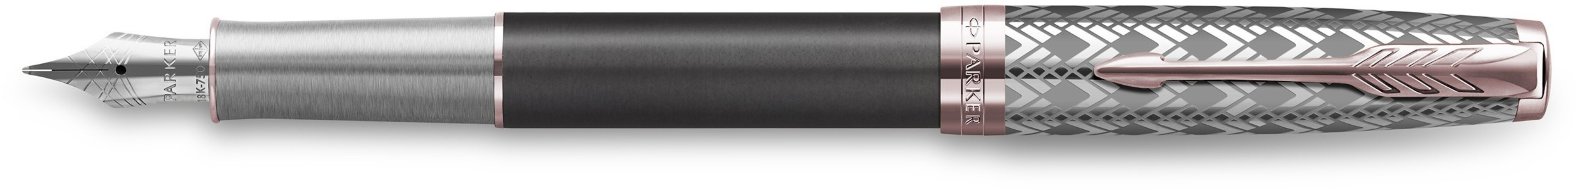 Ручка перьевая Parker Sonnet Premium F537 Metal Grey PGT F перо золото 18K